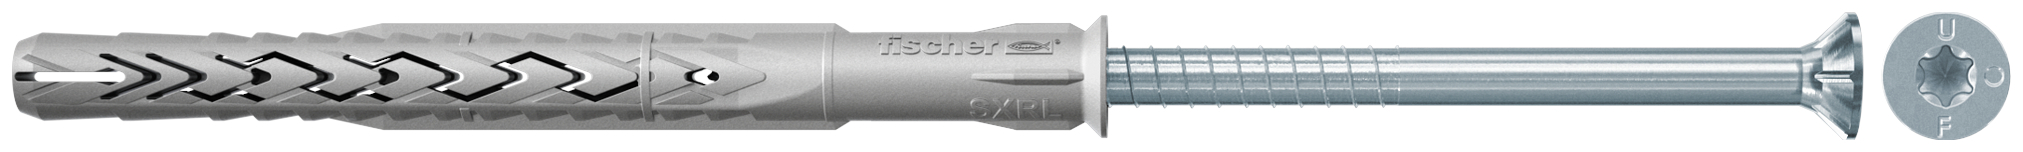 fischer Tasselli prolungati SXRL 14X180 T (1 Pz.) Tassello prolungato in nylon con marcatura CE con vite premontata T.S.P. impronta torx.